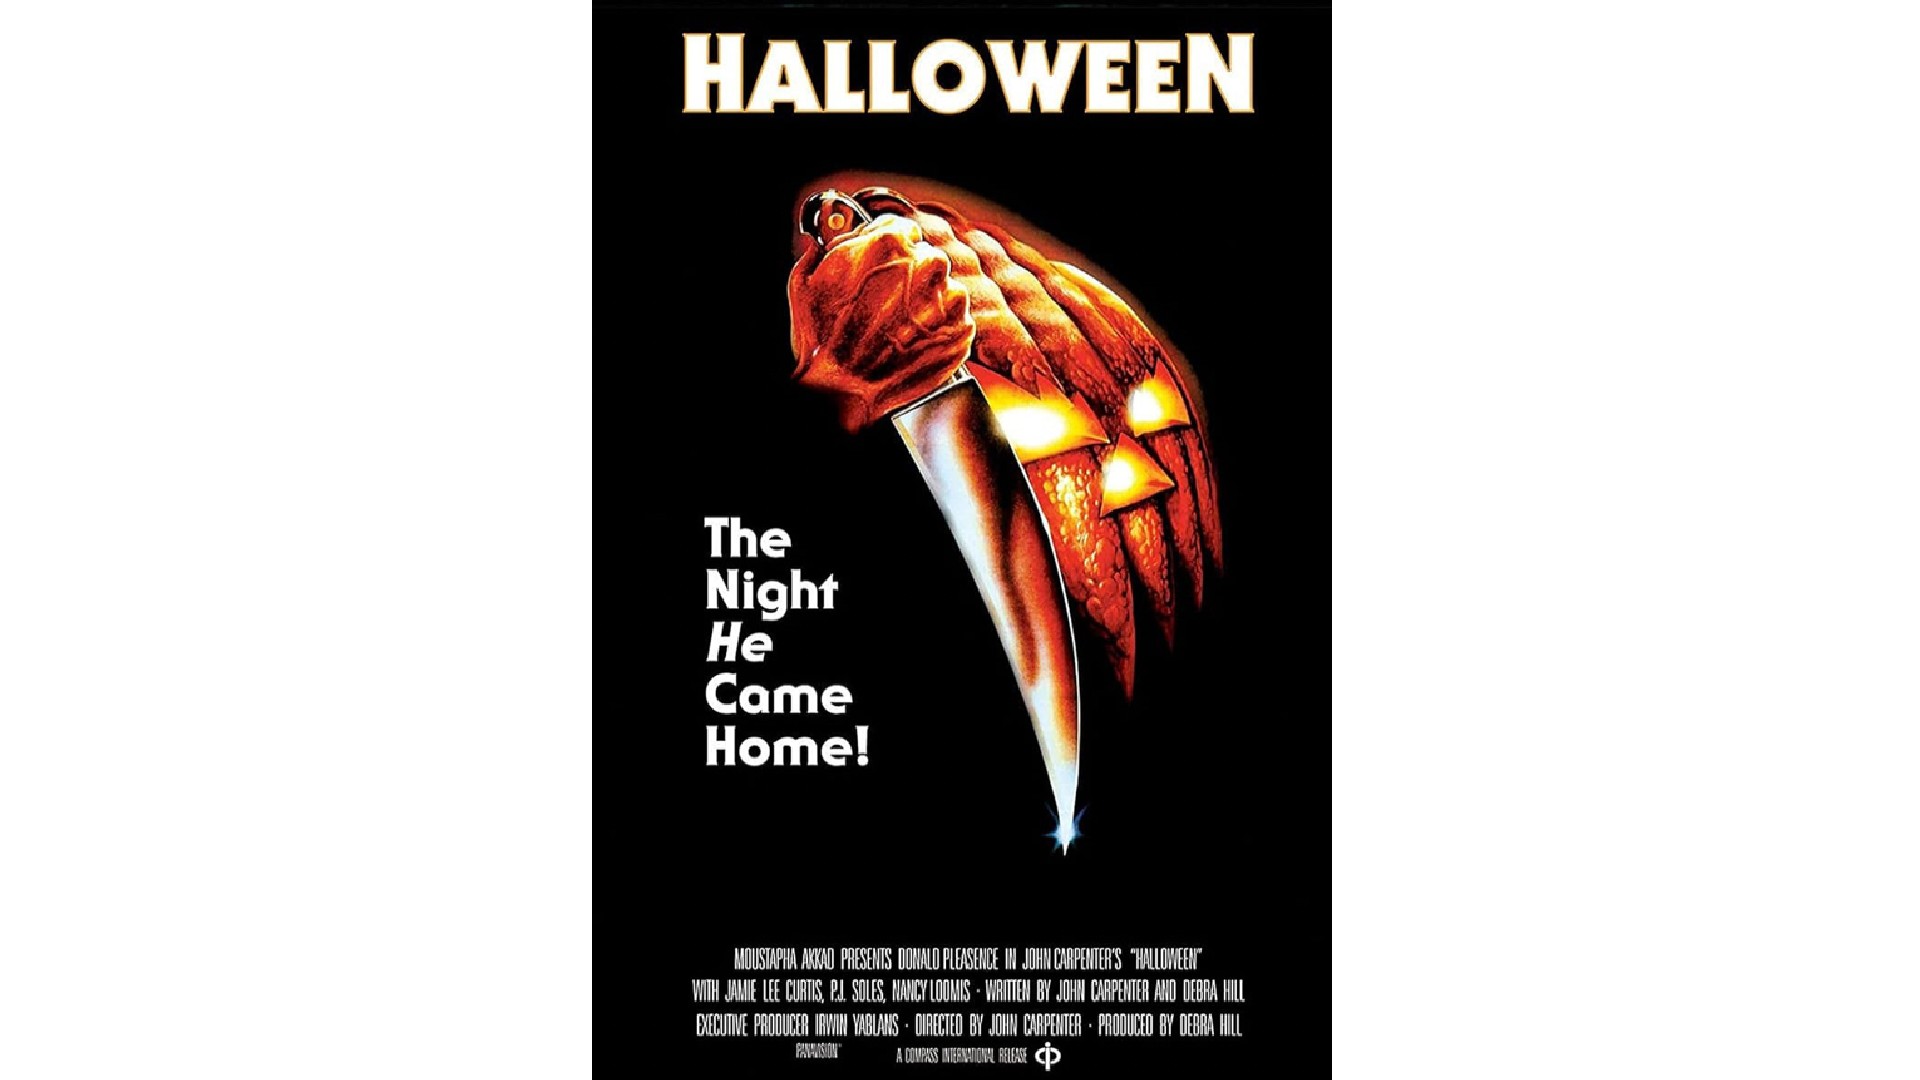 Horror film poster for Halloween